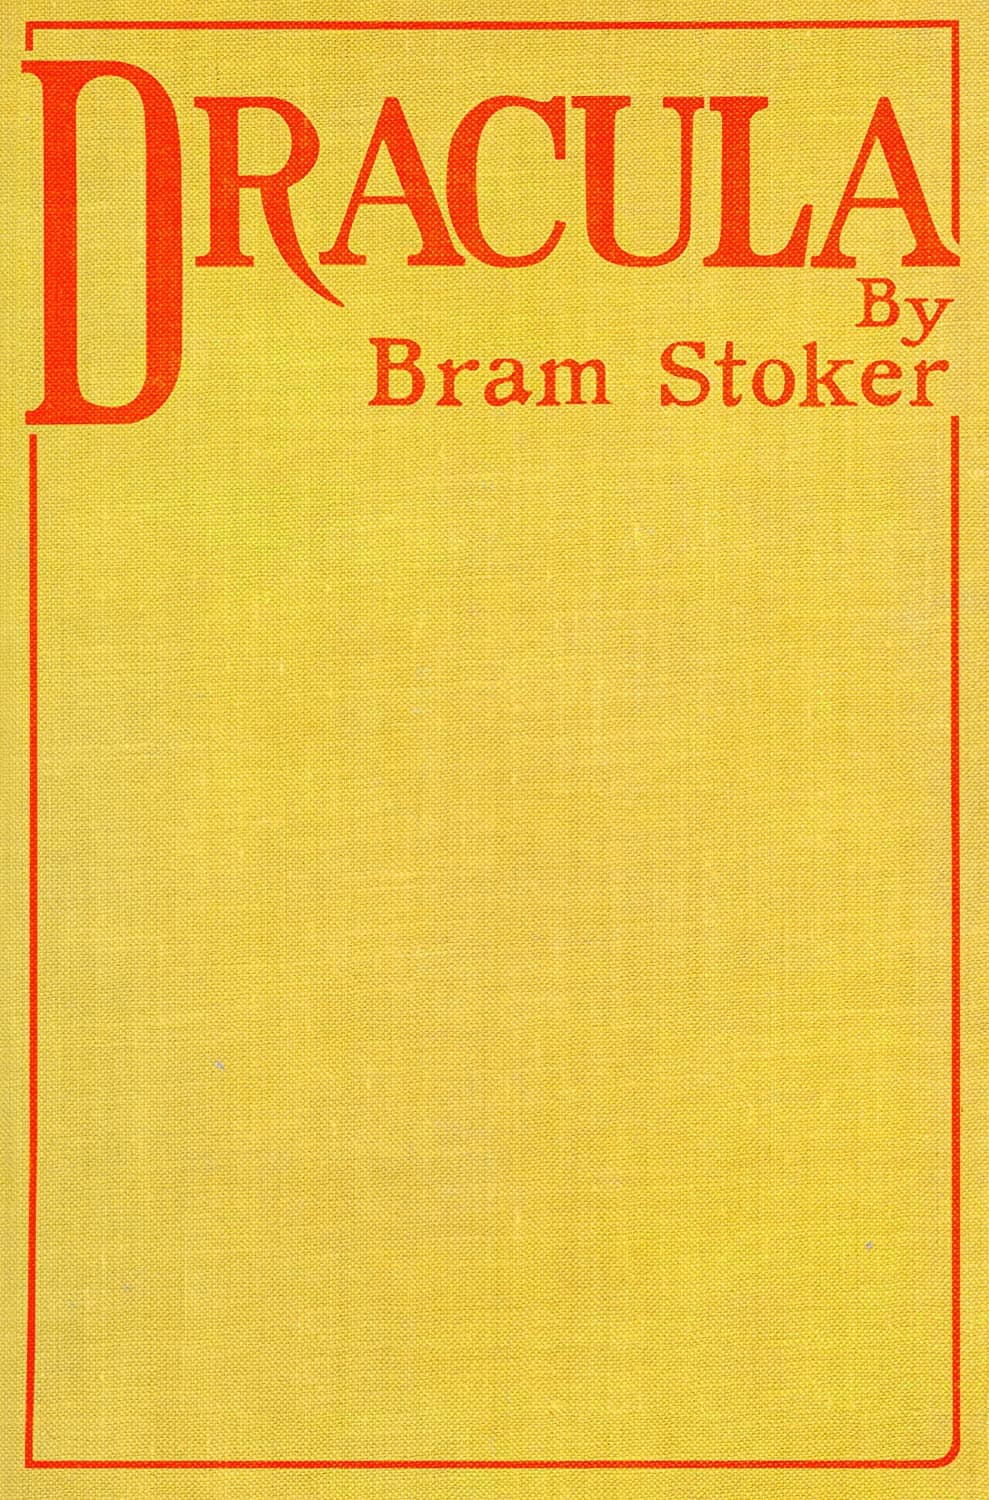 La prima copertina del romanzo Dracula di Bram Stoker